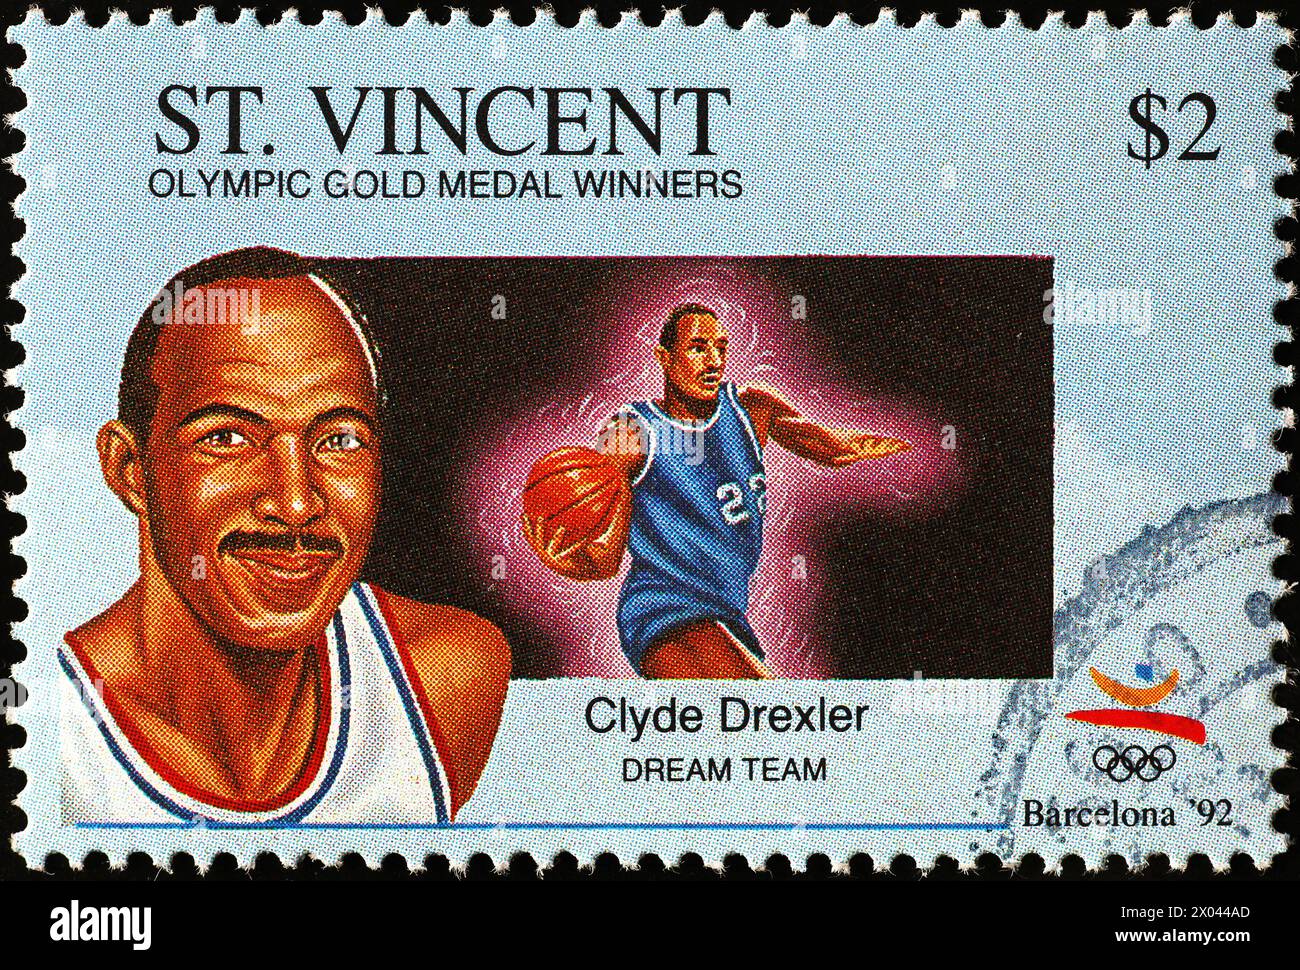 Clyde Drexler, membre de l'équipe de rêve, sur timbre-poste Banque D'Images